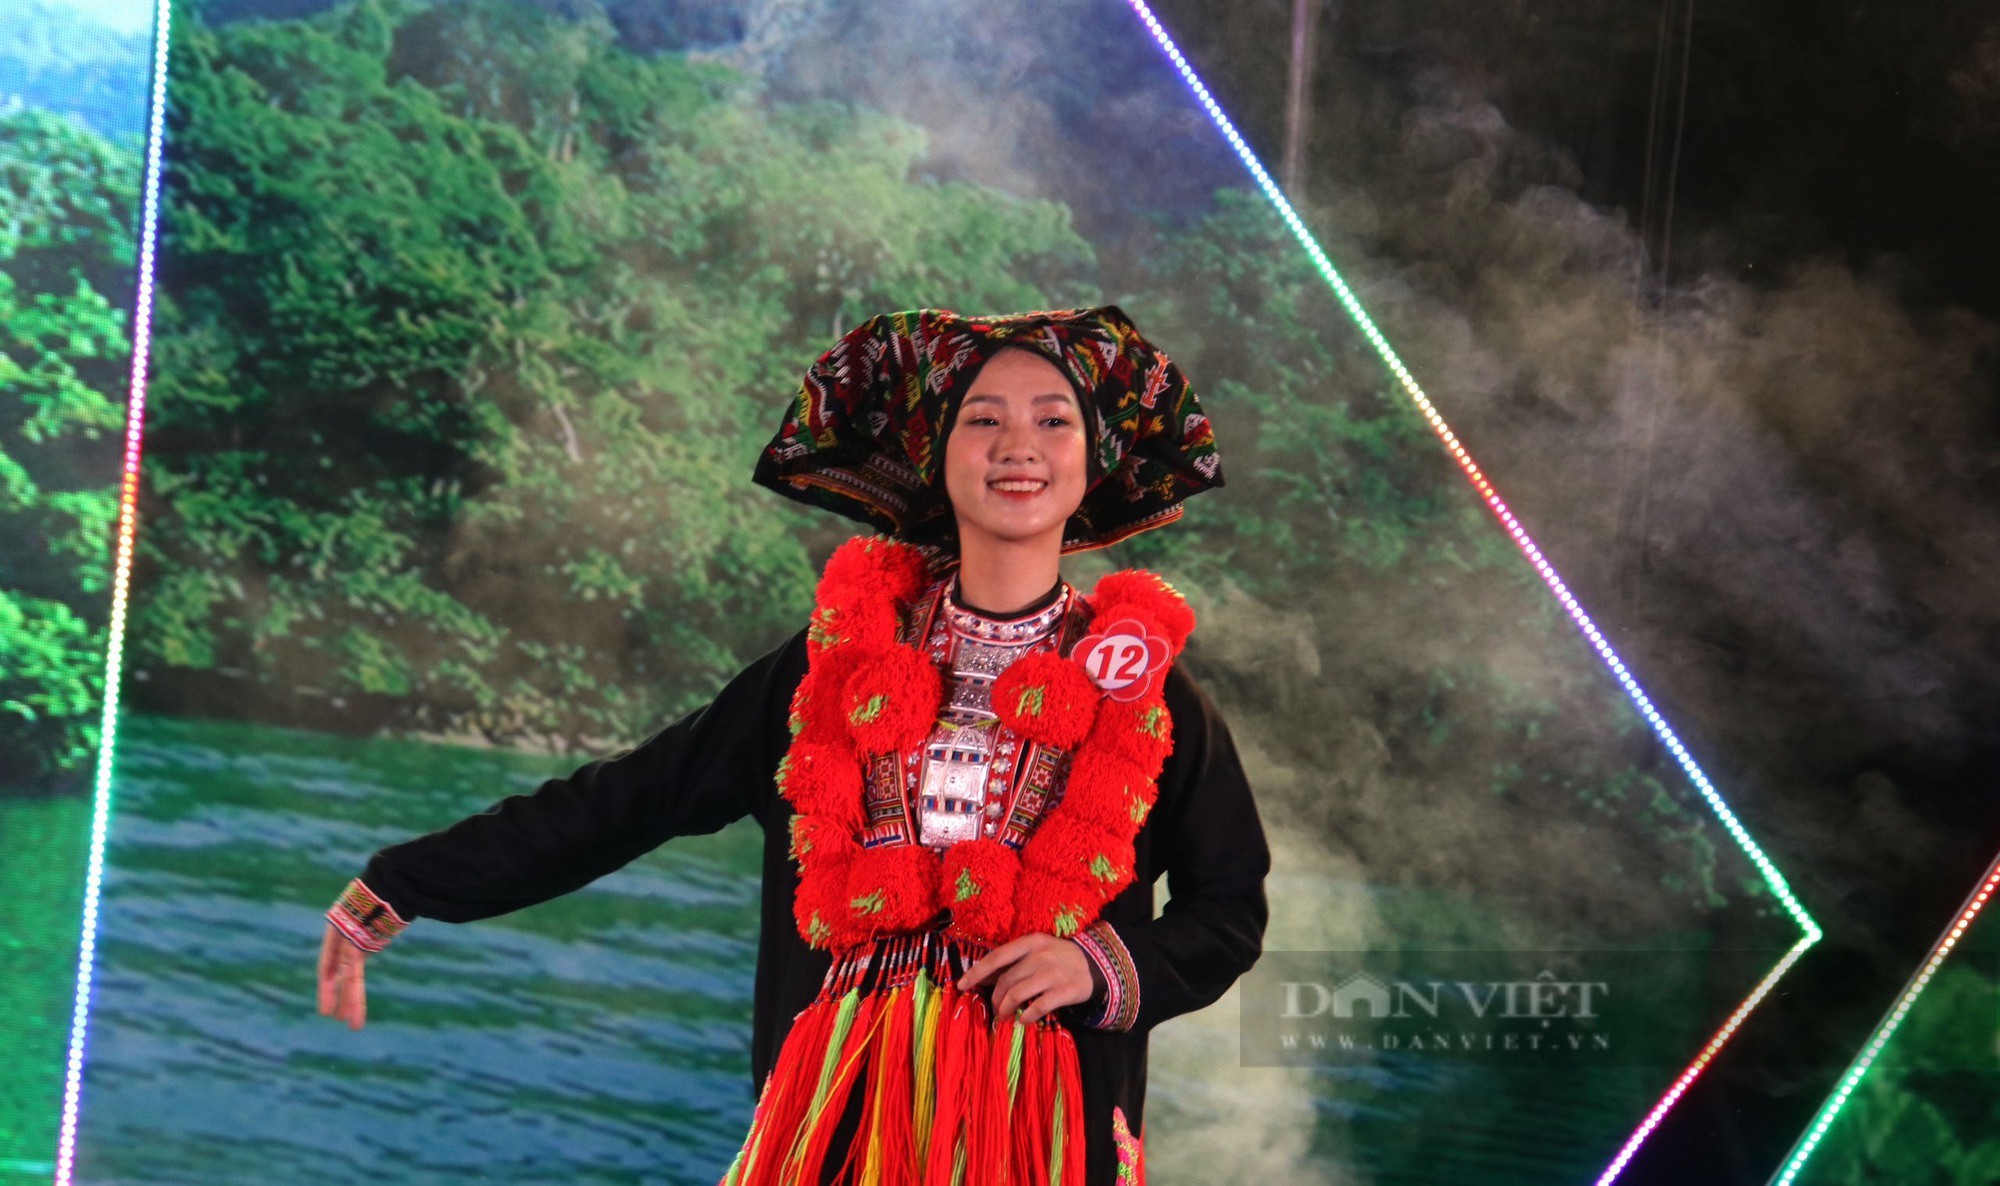 Lộng lẫy trang phục dân tộc trong đêm chung kết Hội thi Người đẹp Bắc Kạn - Ảnh 3.